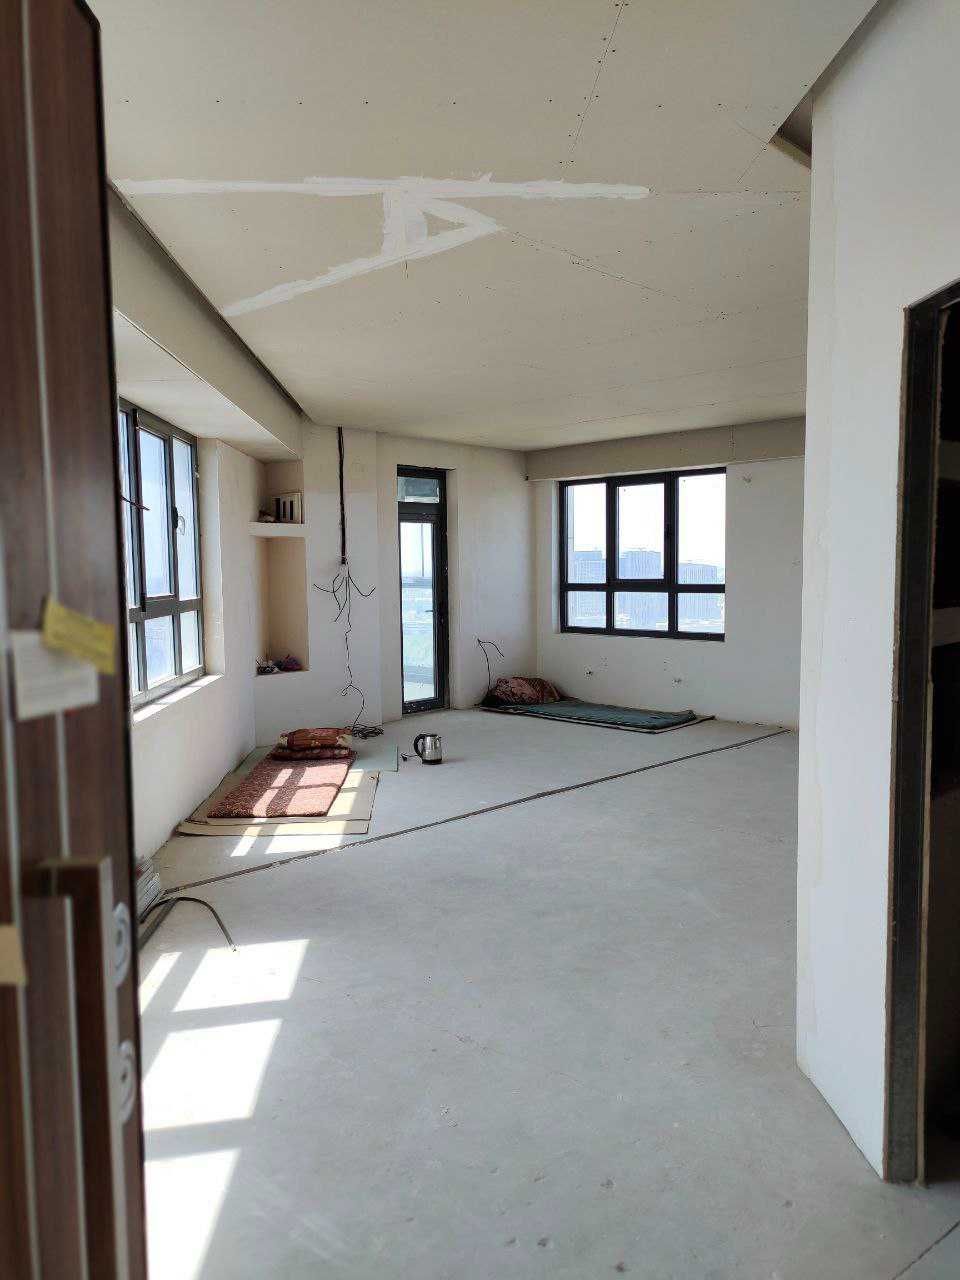 Продается 3-х комнатная квартира в Акай сити (RM)